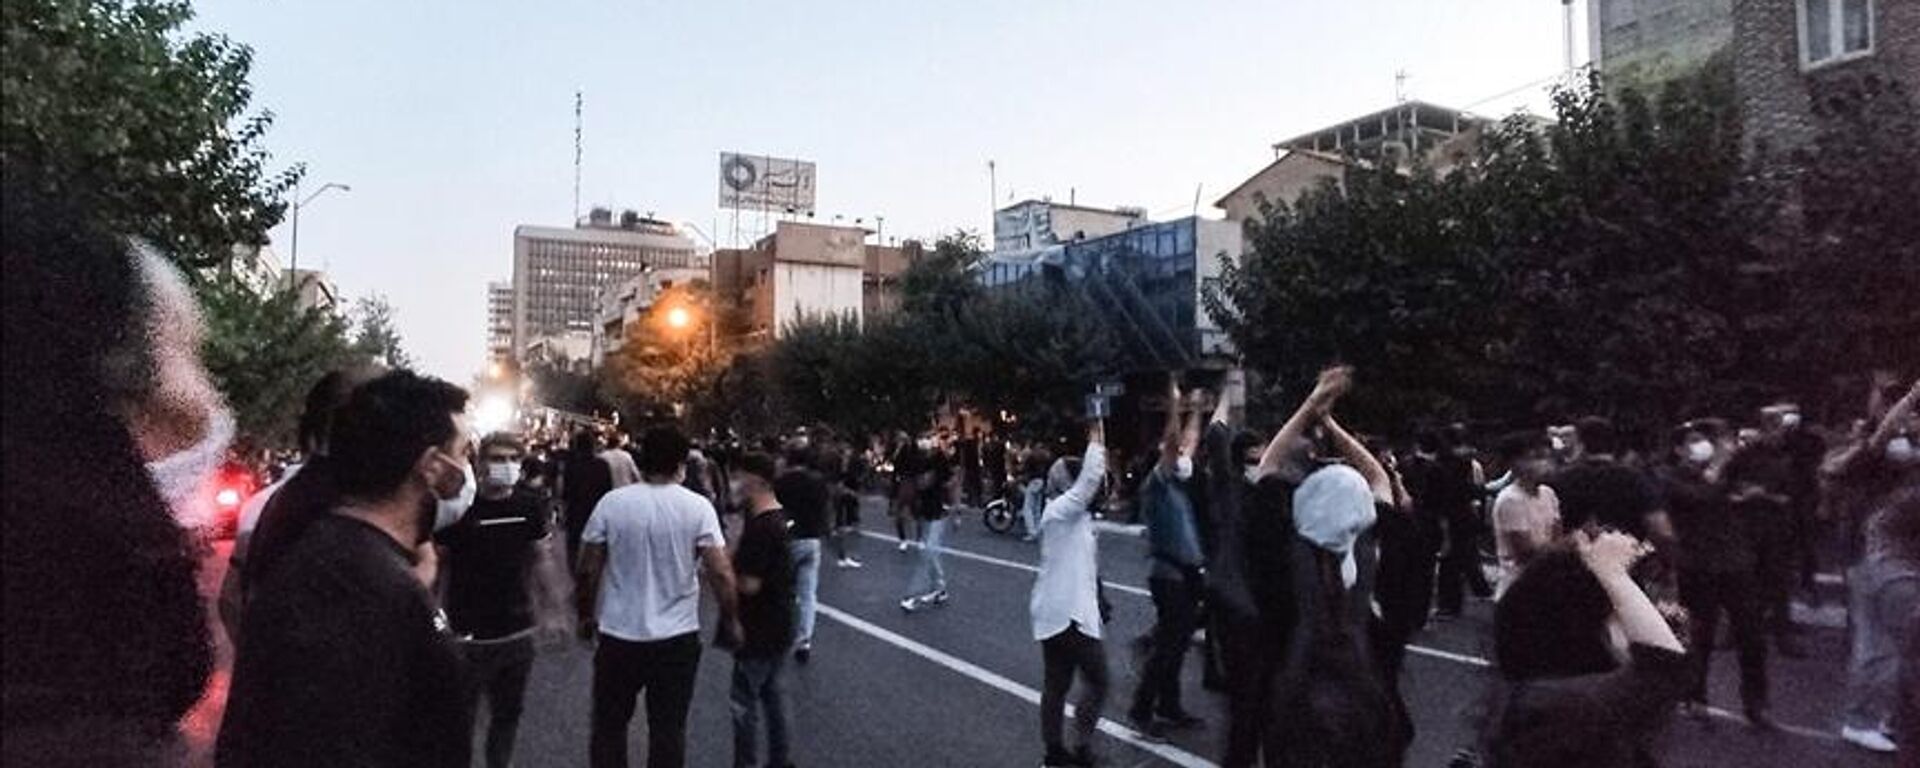 İran'da, Mahsa Emini'nin ölümünün ardından başlayan gösteriler 19. gününü geride bırakırken, ülkede protesto düzenleyen lise öğrencileri dikkati çekiyor. - Sputnik Türkiye, 1920, 06.10.2022